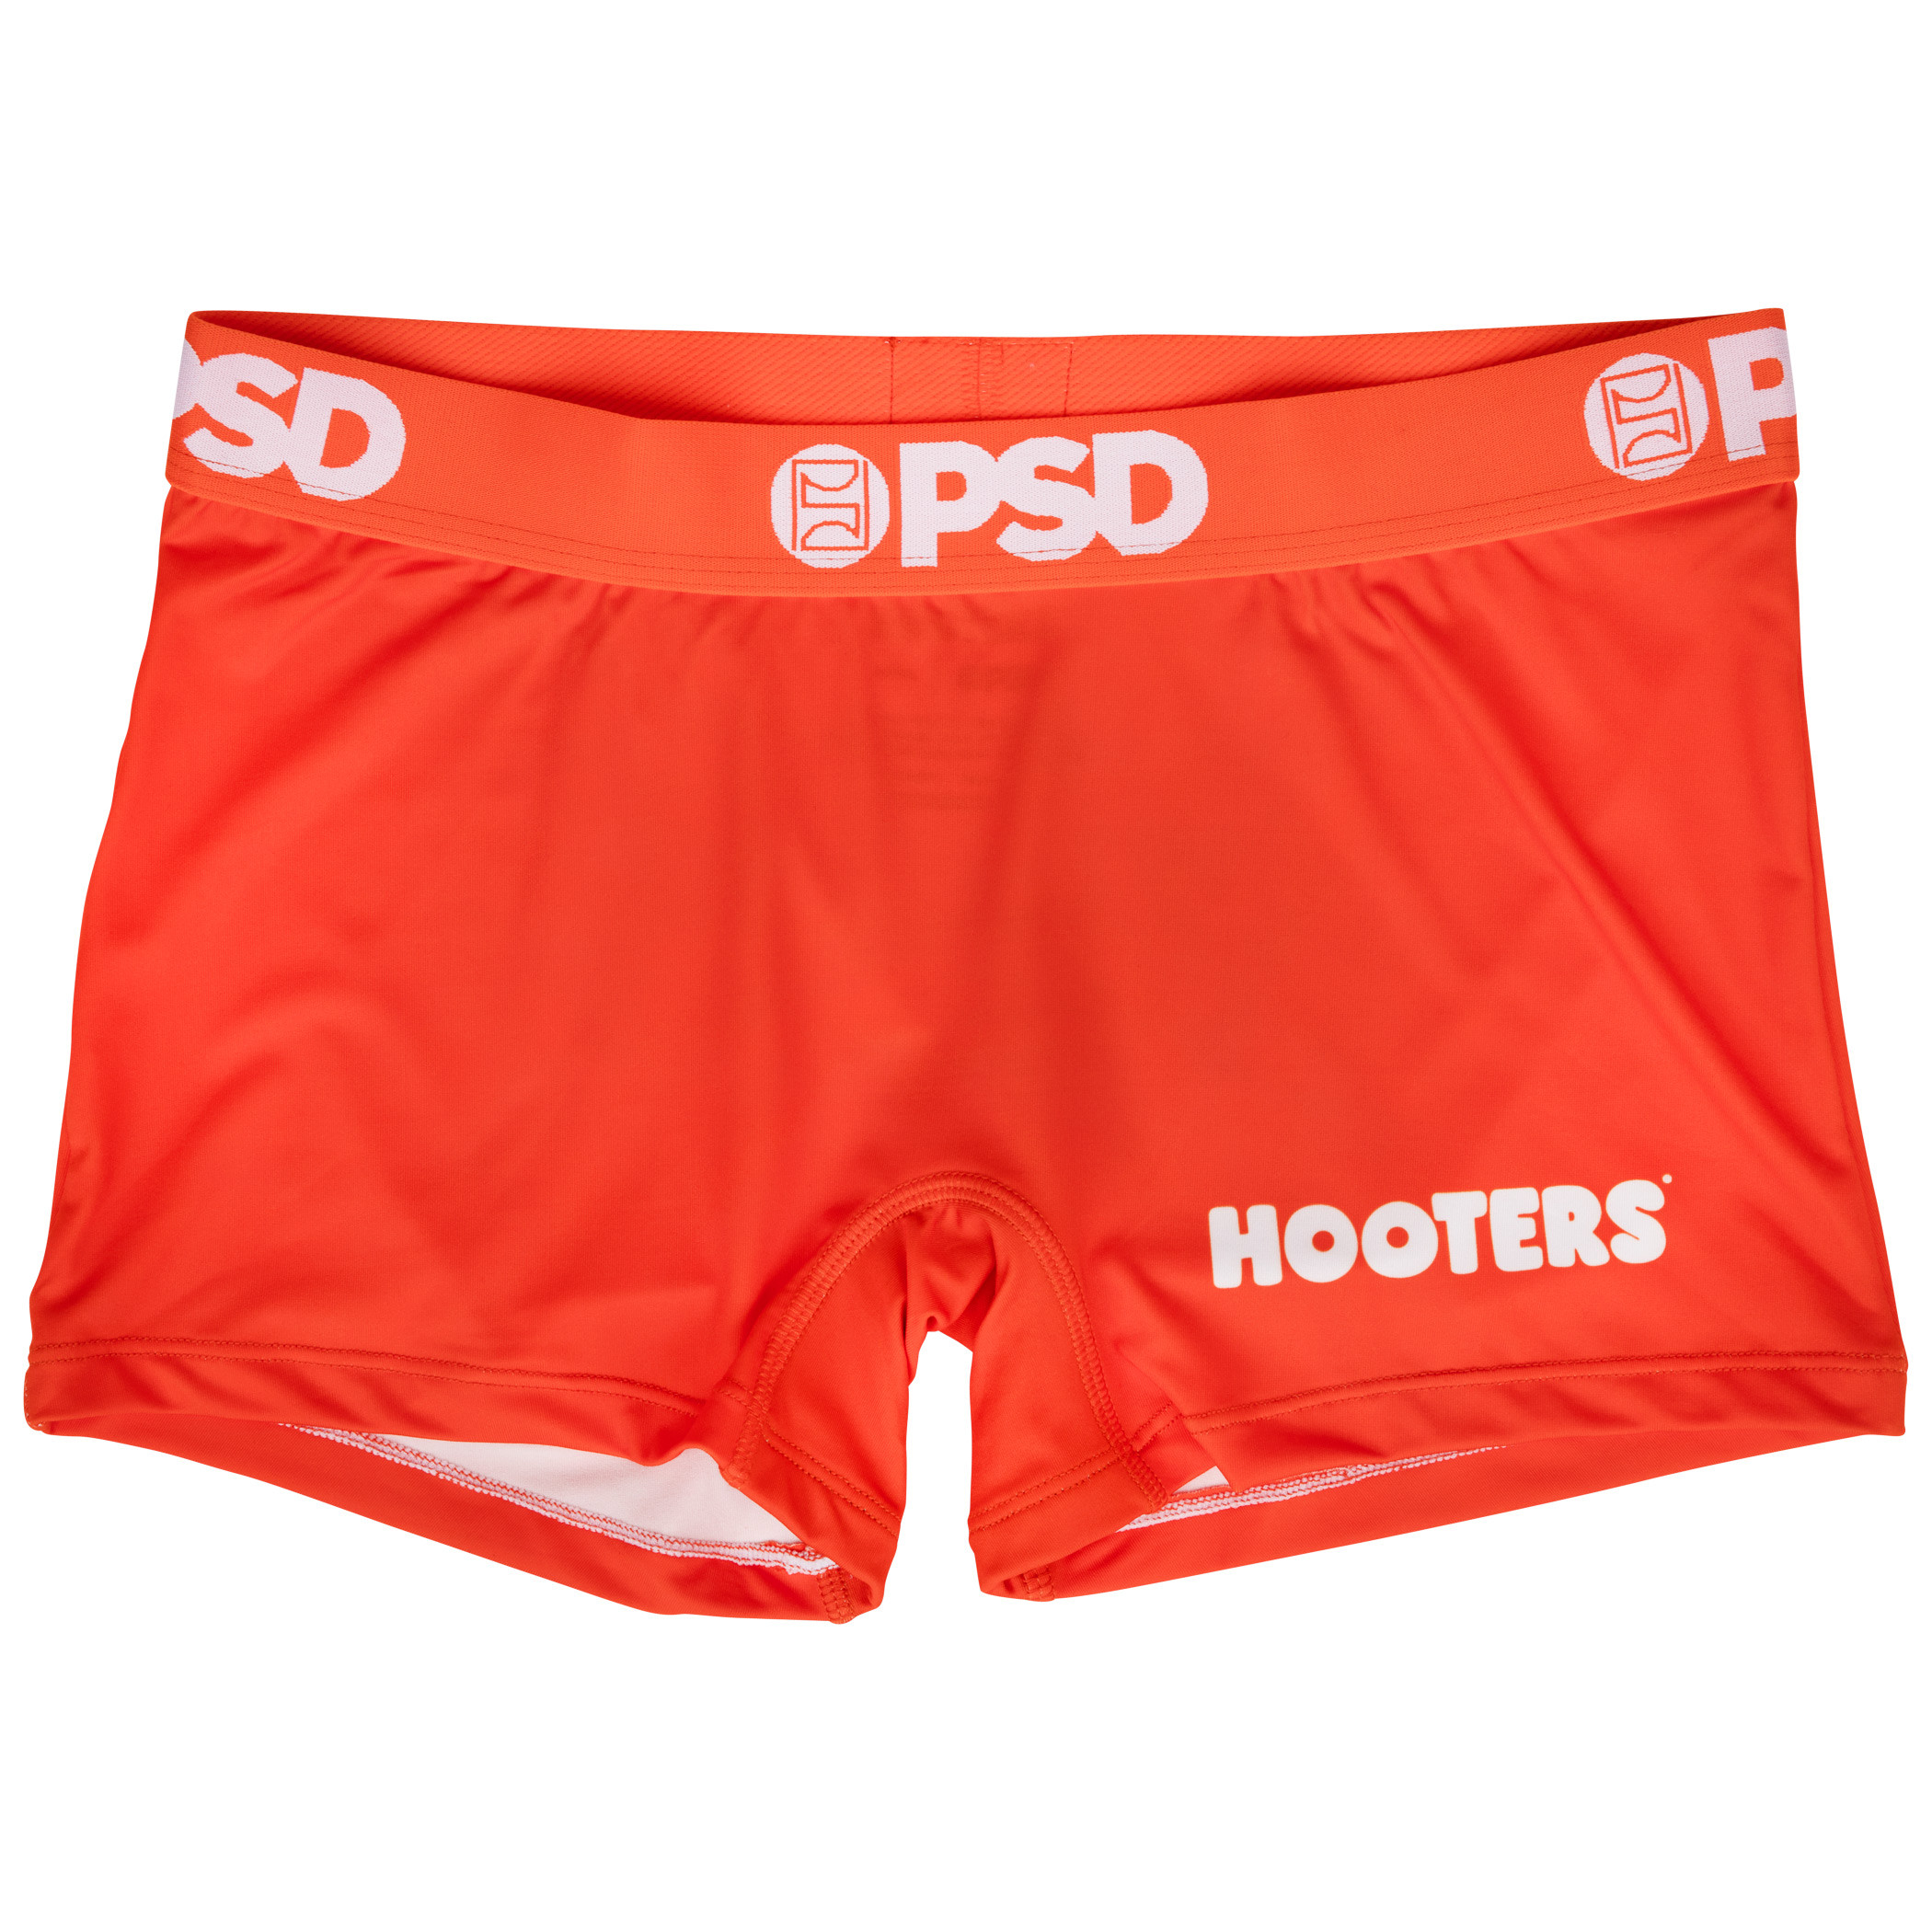 Buy PSD Underwear Women's Underwear Hooters Boy Short